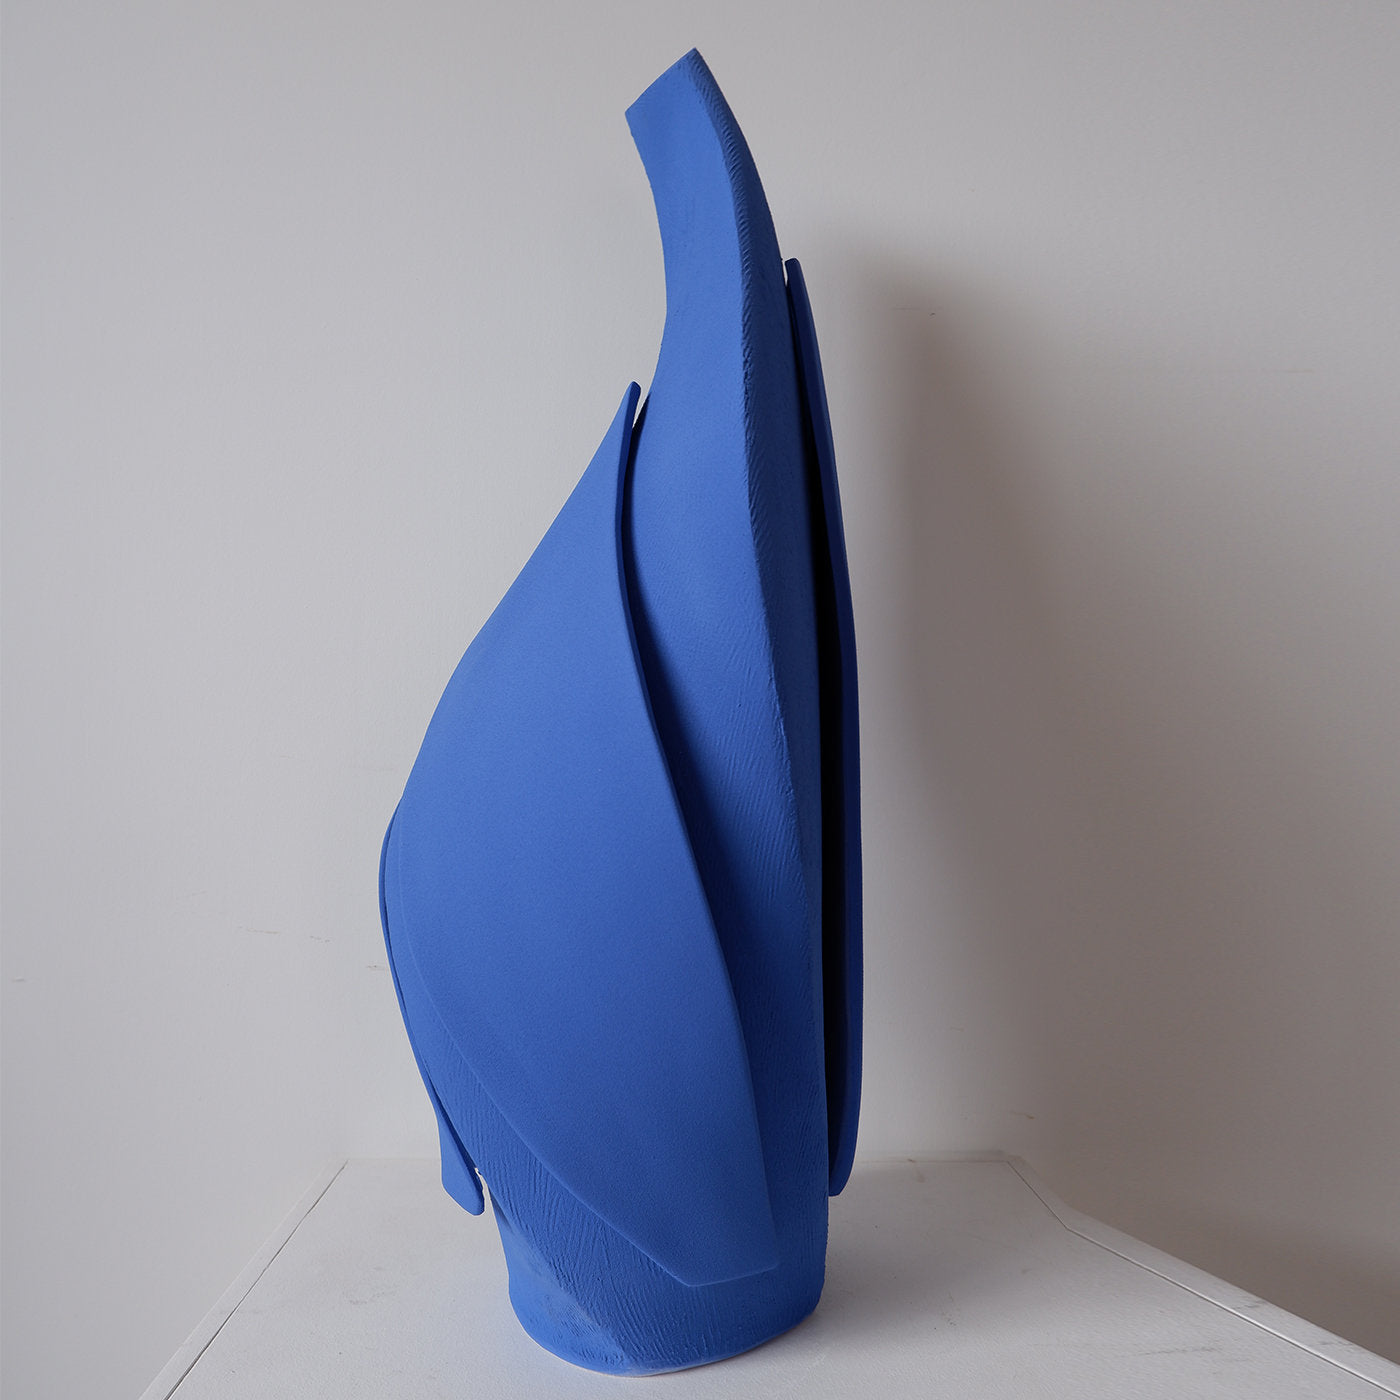 Blaue Demeter-Vase #1 - Alternative Ansicht 1